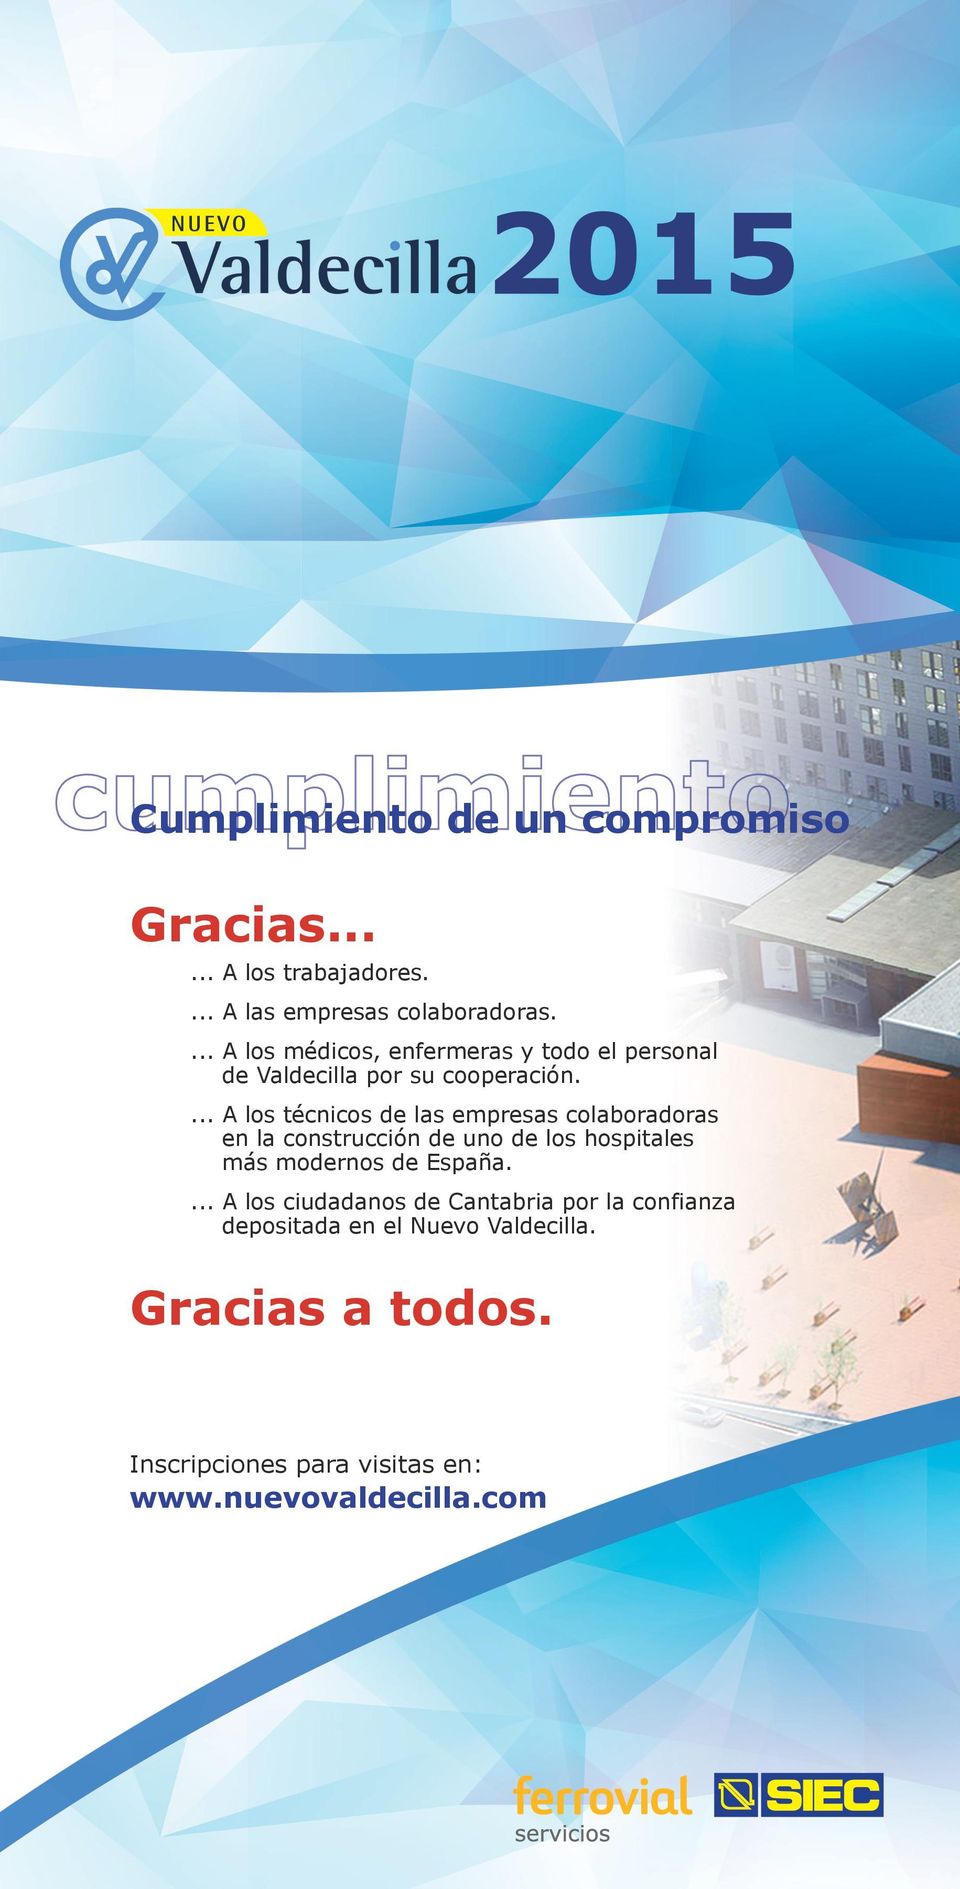 ... A los técnicos de las empresas colaboradoras en la construcción de uno de los hospitales más modernos de España.